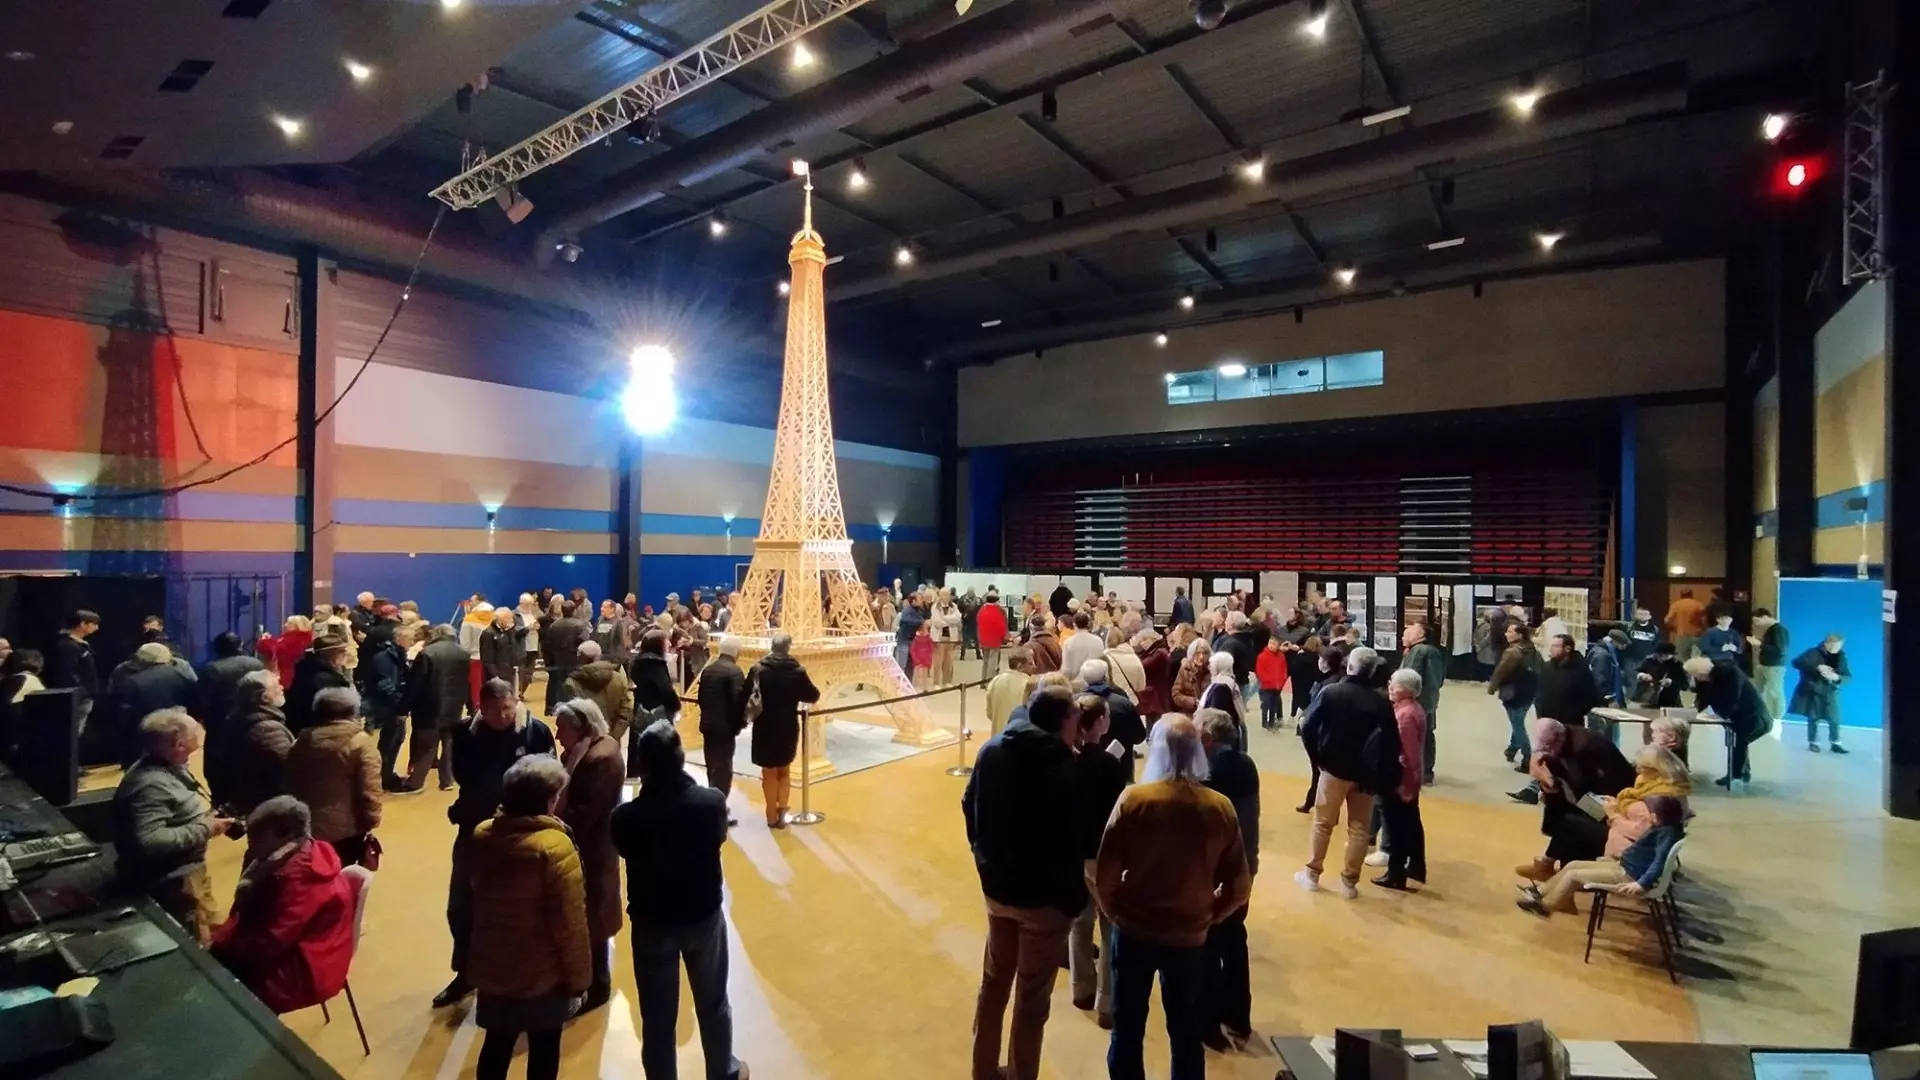 Книга рекордов Гиннесса чуть не забраковала самую высокую модель Эйфелевой башни